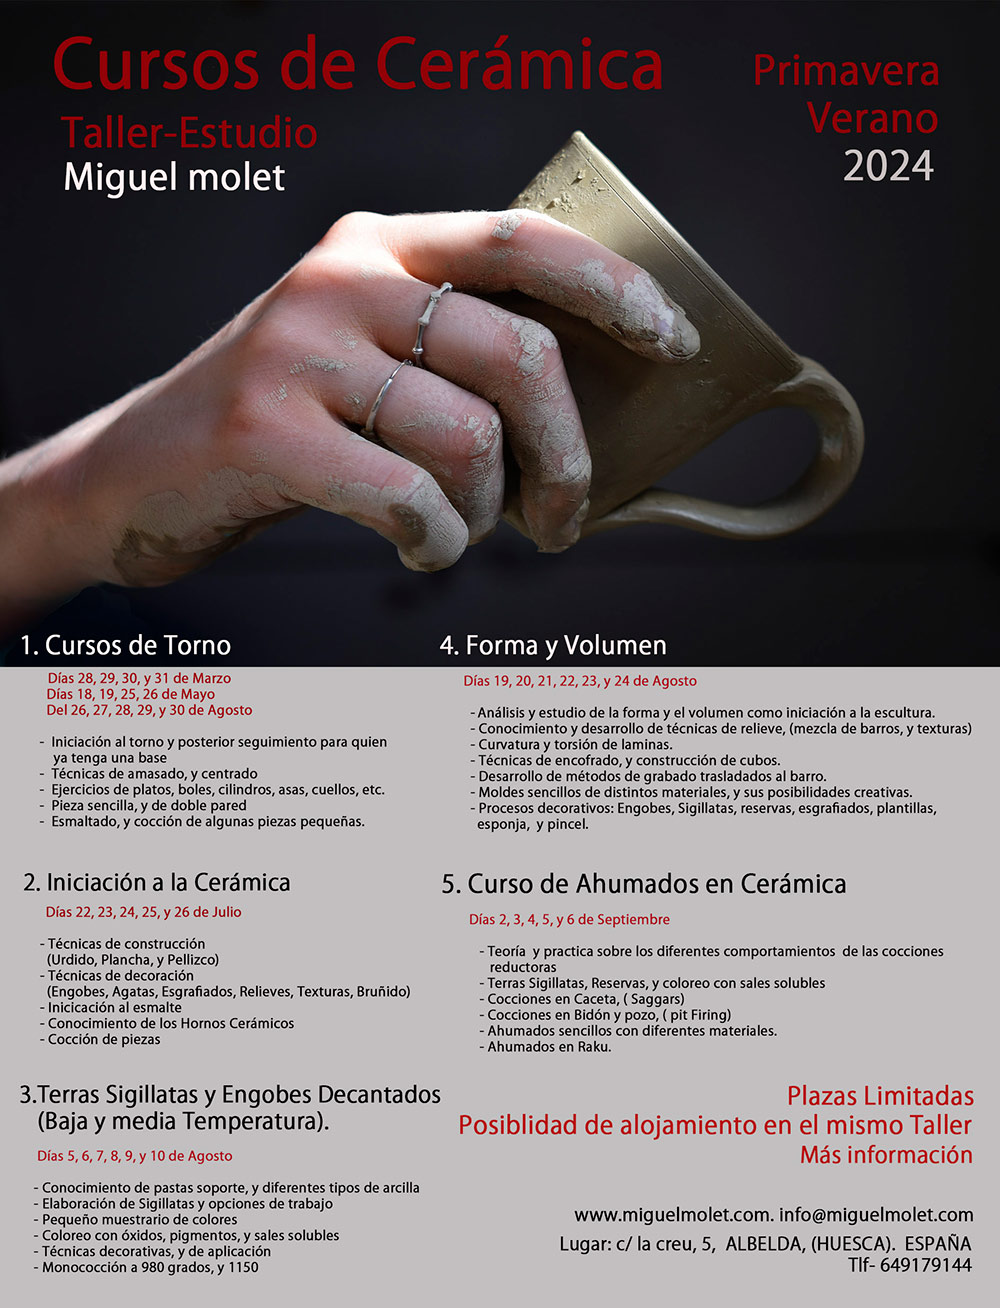 Programa de cursos de cerámica impartidos por Miguel Molet